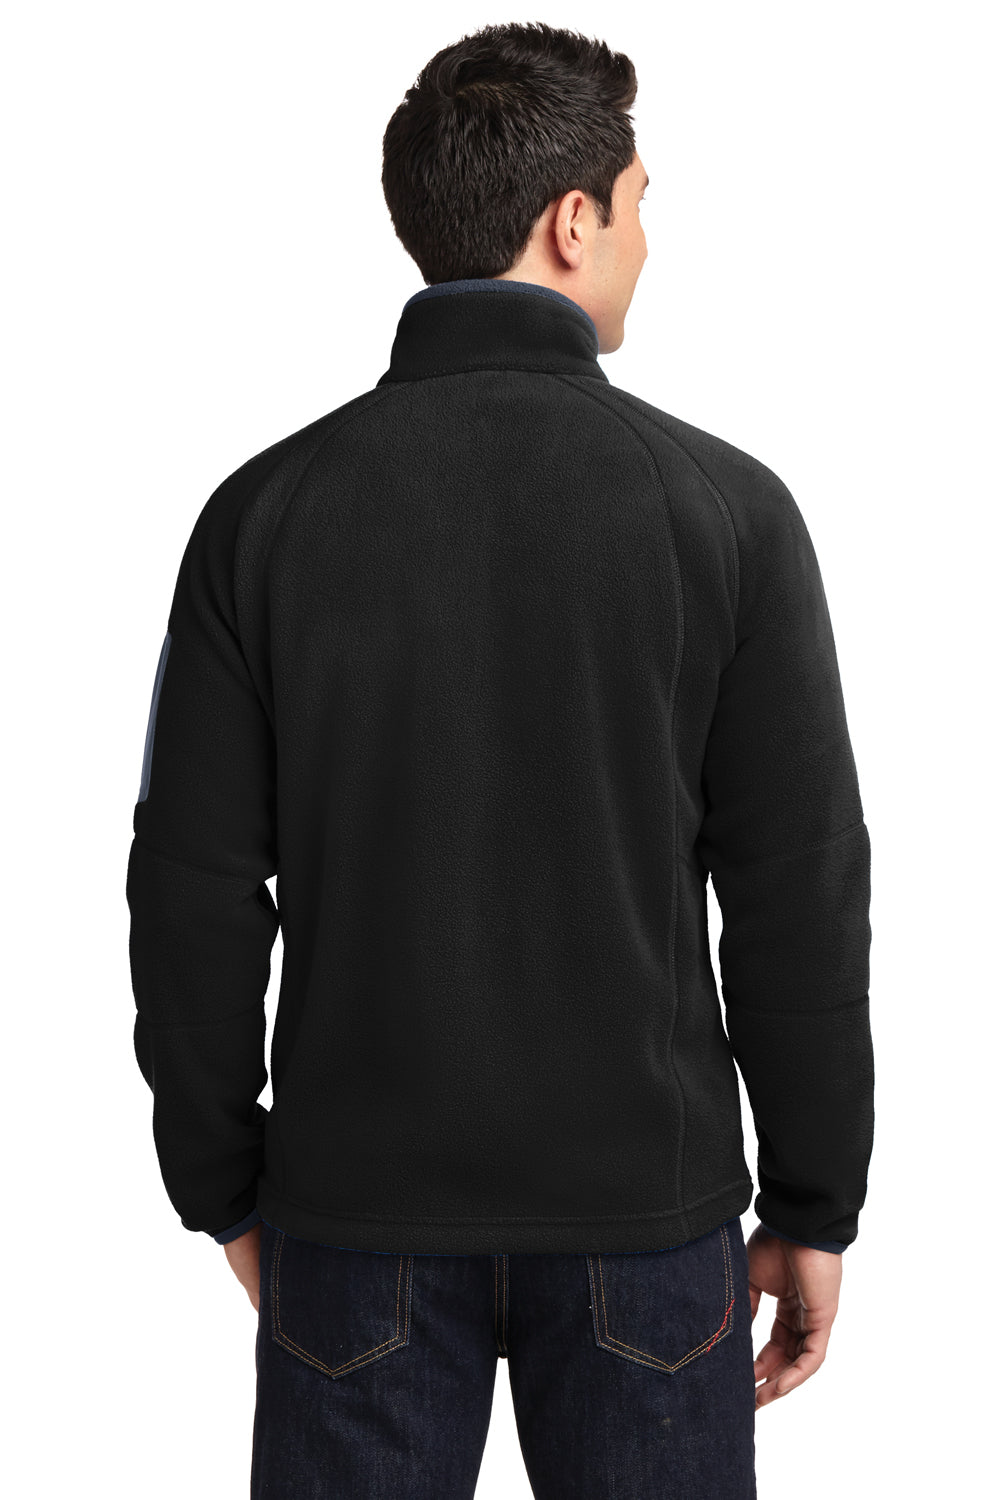 Port Authority F229 Mens Full Zip Fleece Jacket Black/Grey Back